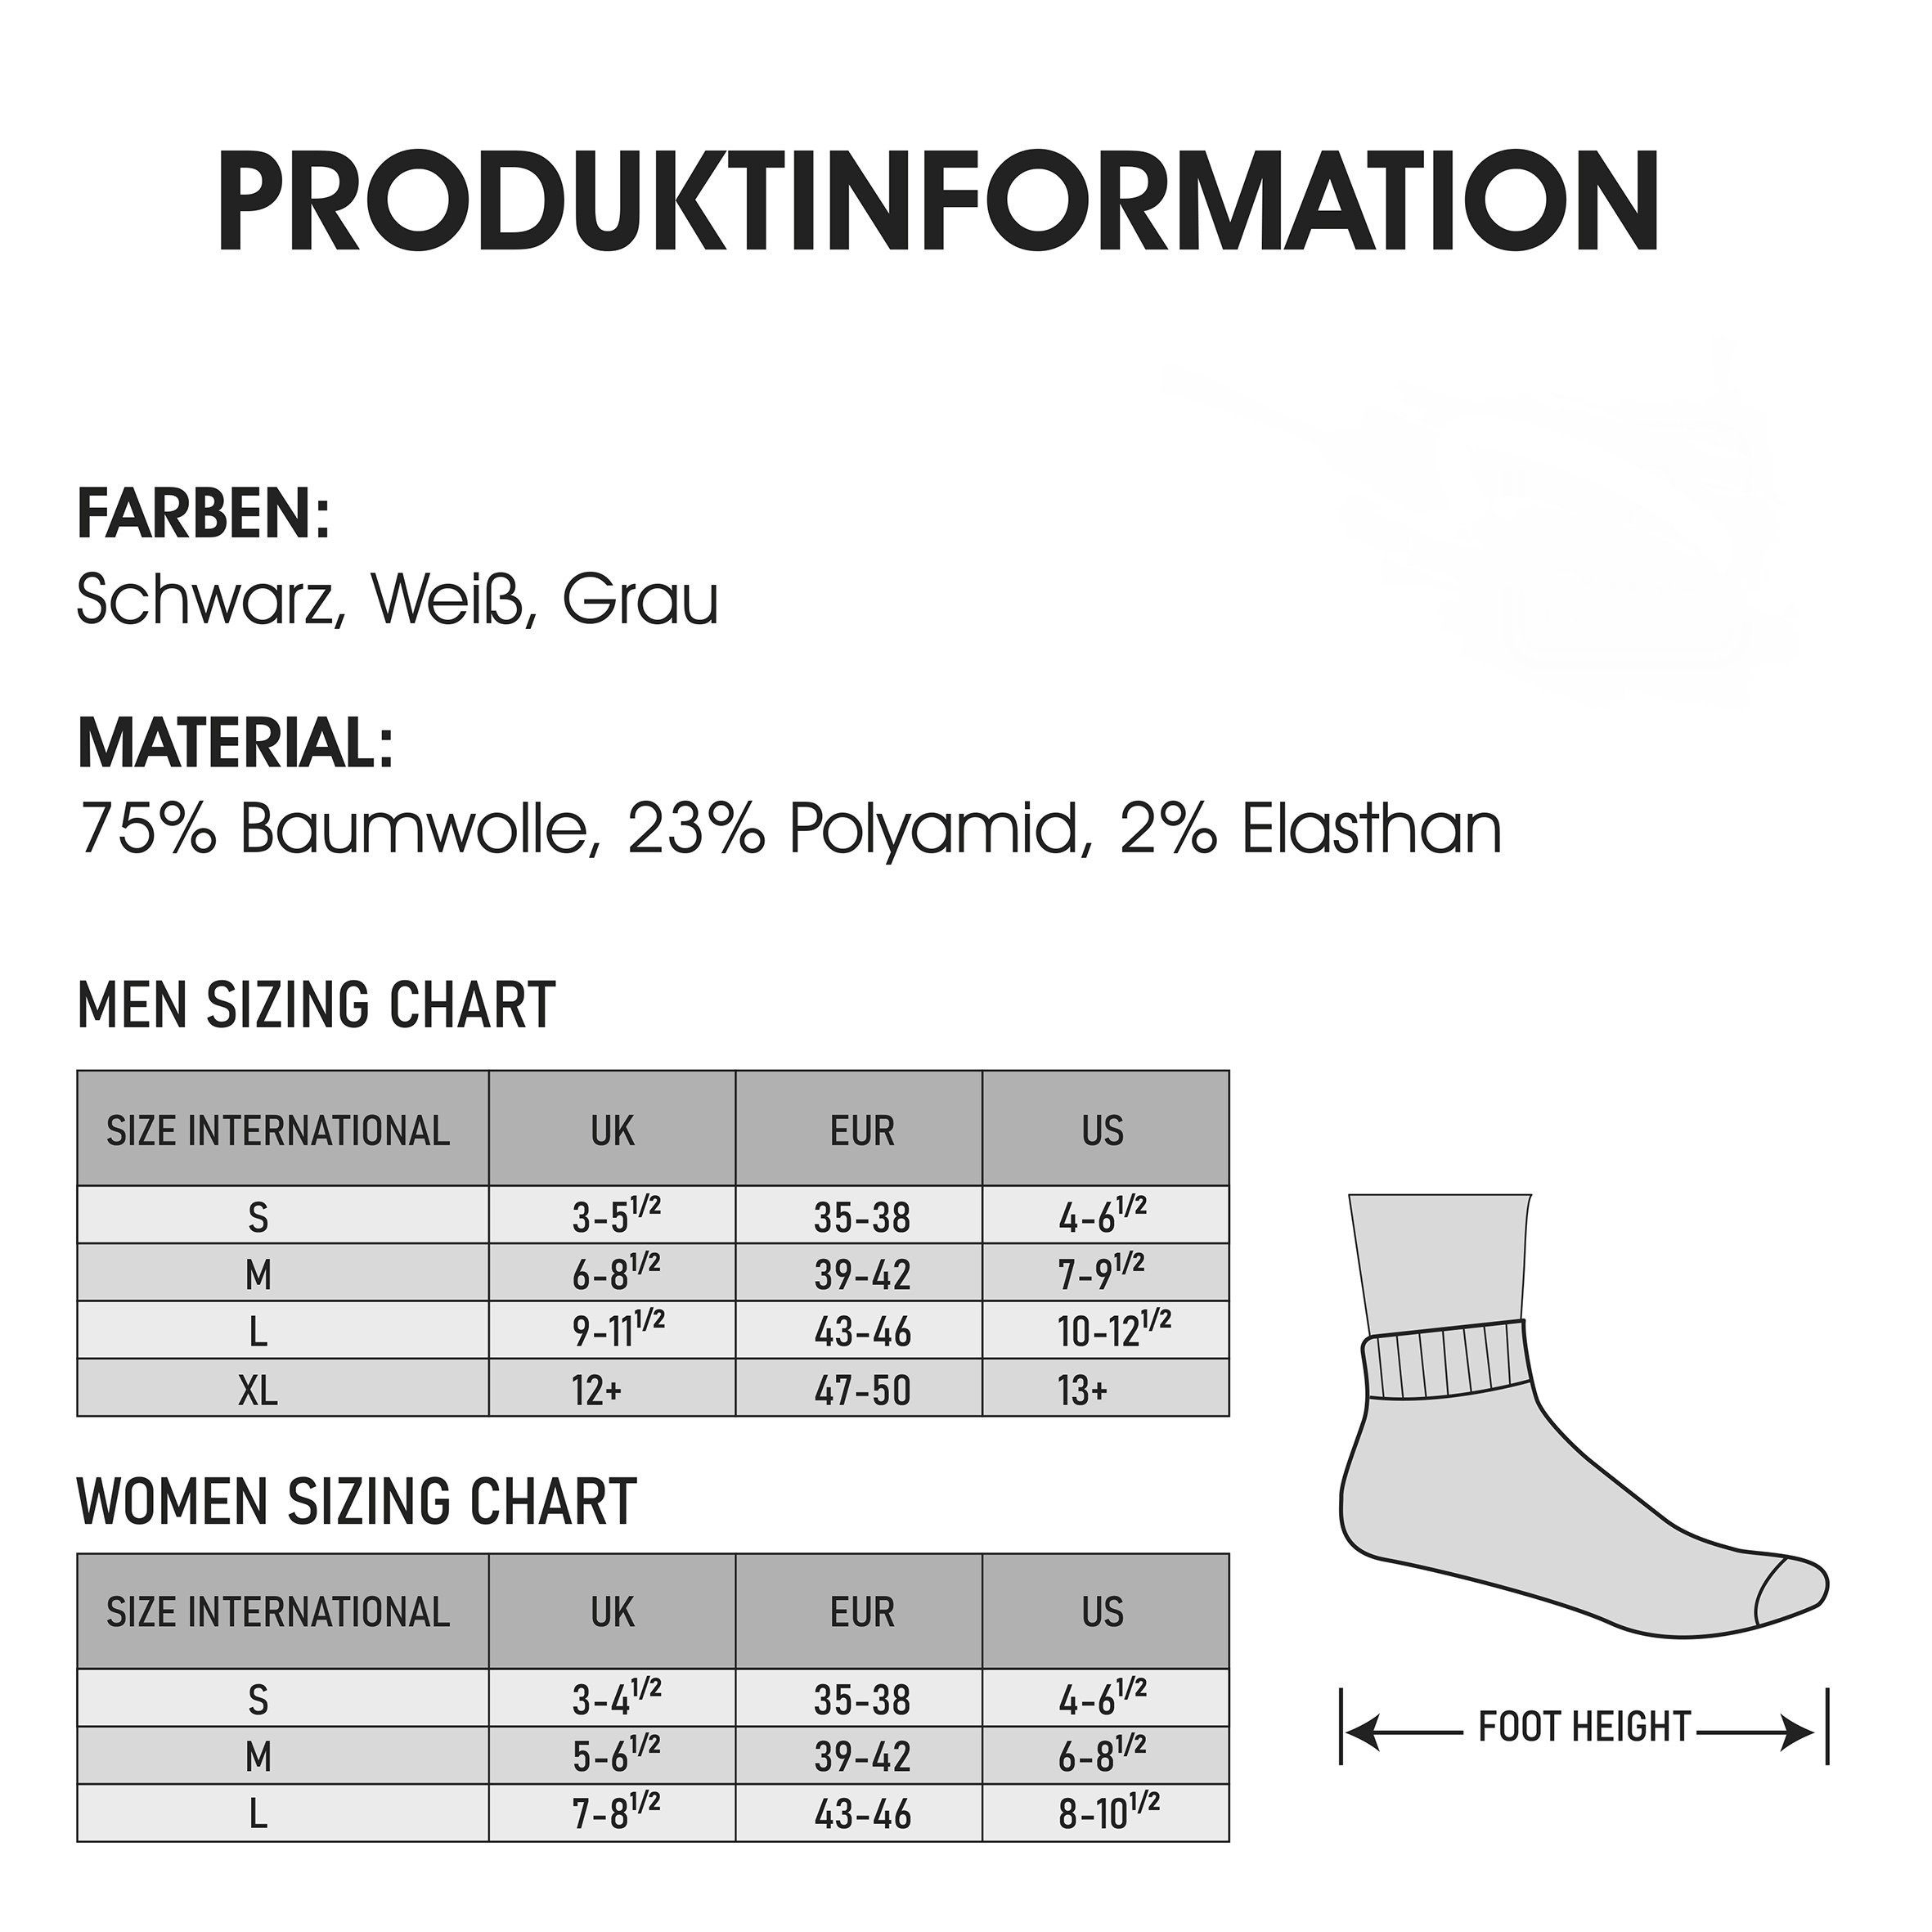 Ferse & Socken - Weiß Sohle Sneaker - 24 atmungsaktiv Arbeitssocken Damen NAHLE kein Bio-Baumwolle Paar gepolsterte Sportsocken (24-Paar) Herren für und Schwitzen